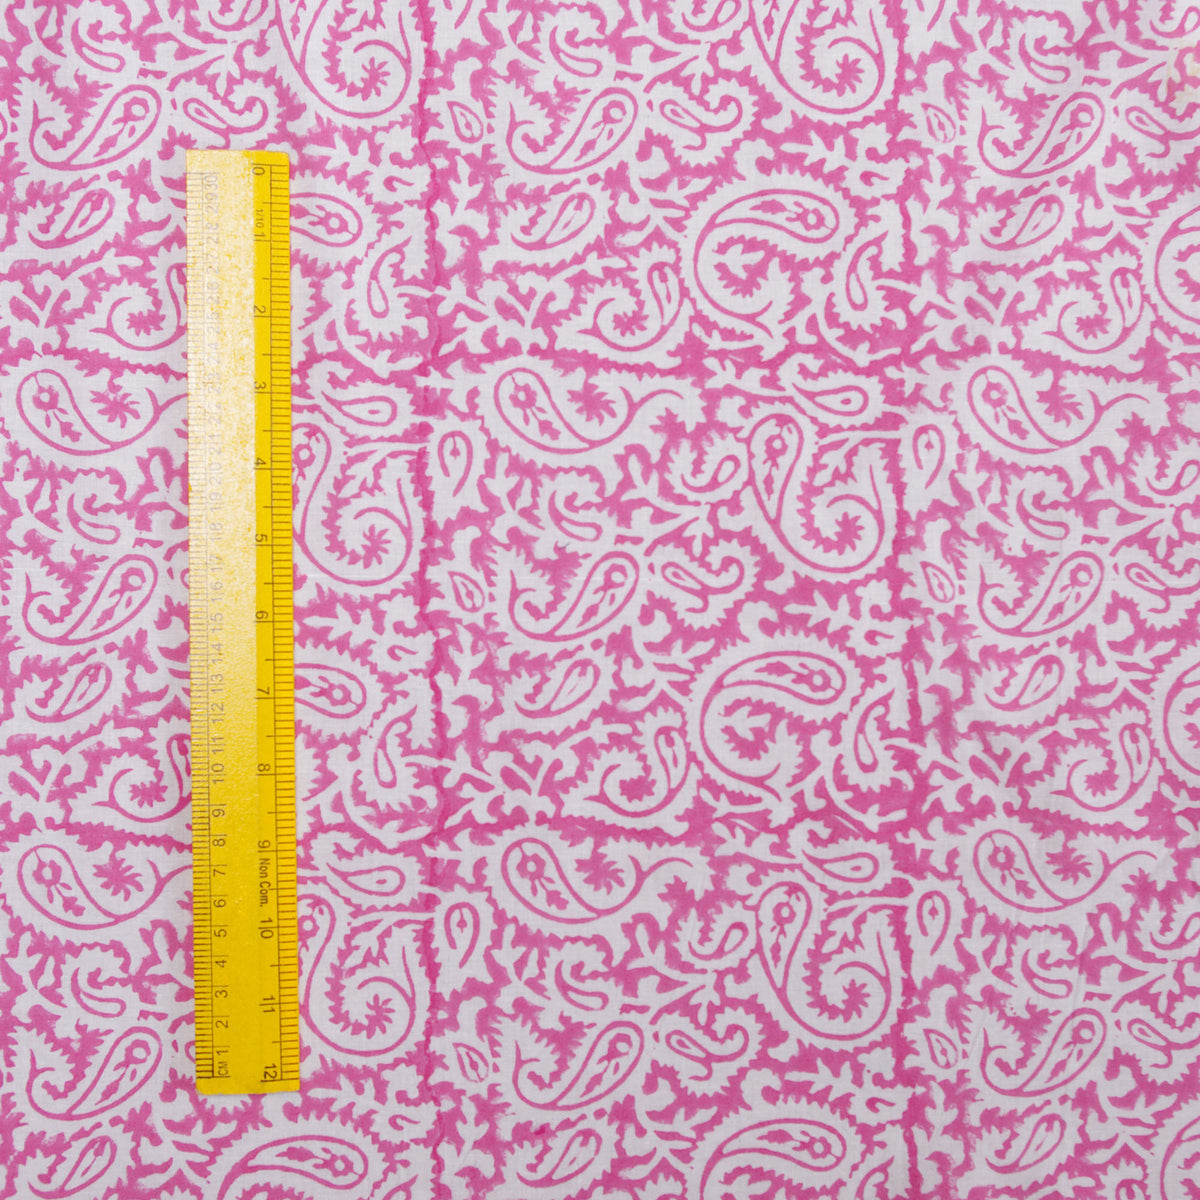 Indian Hand Block 100% Cotton Light Pink Women Dress Fabric Cloth Design 131